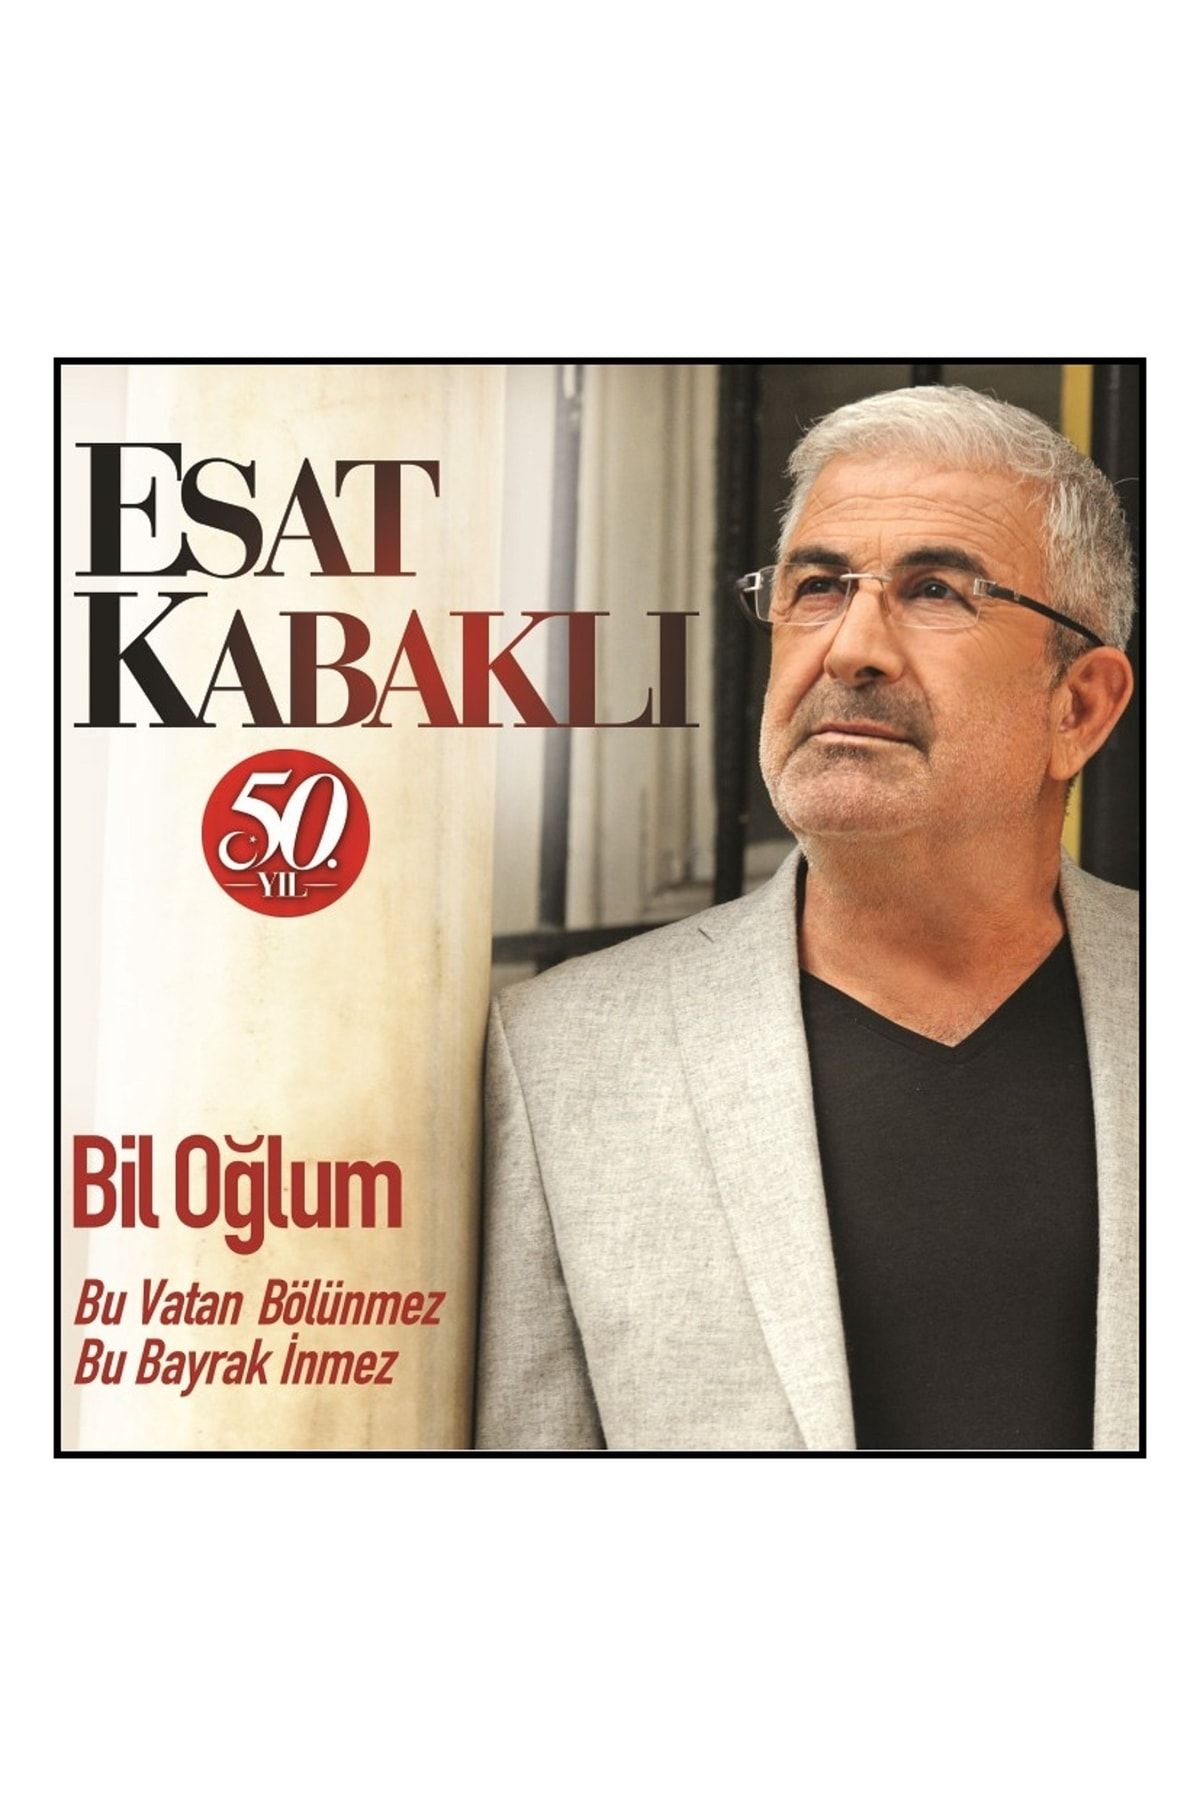 Çınar Müzik Esat Kabaklı - 50.yıl / Kirve Memi - Bil Oğlum (cd)